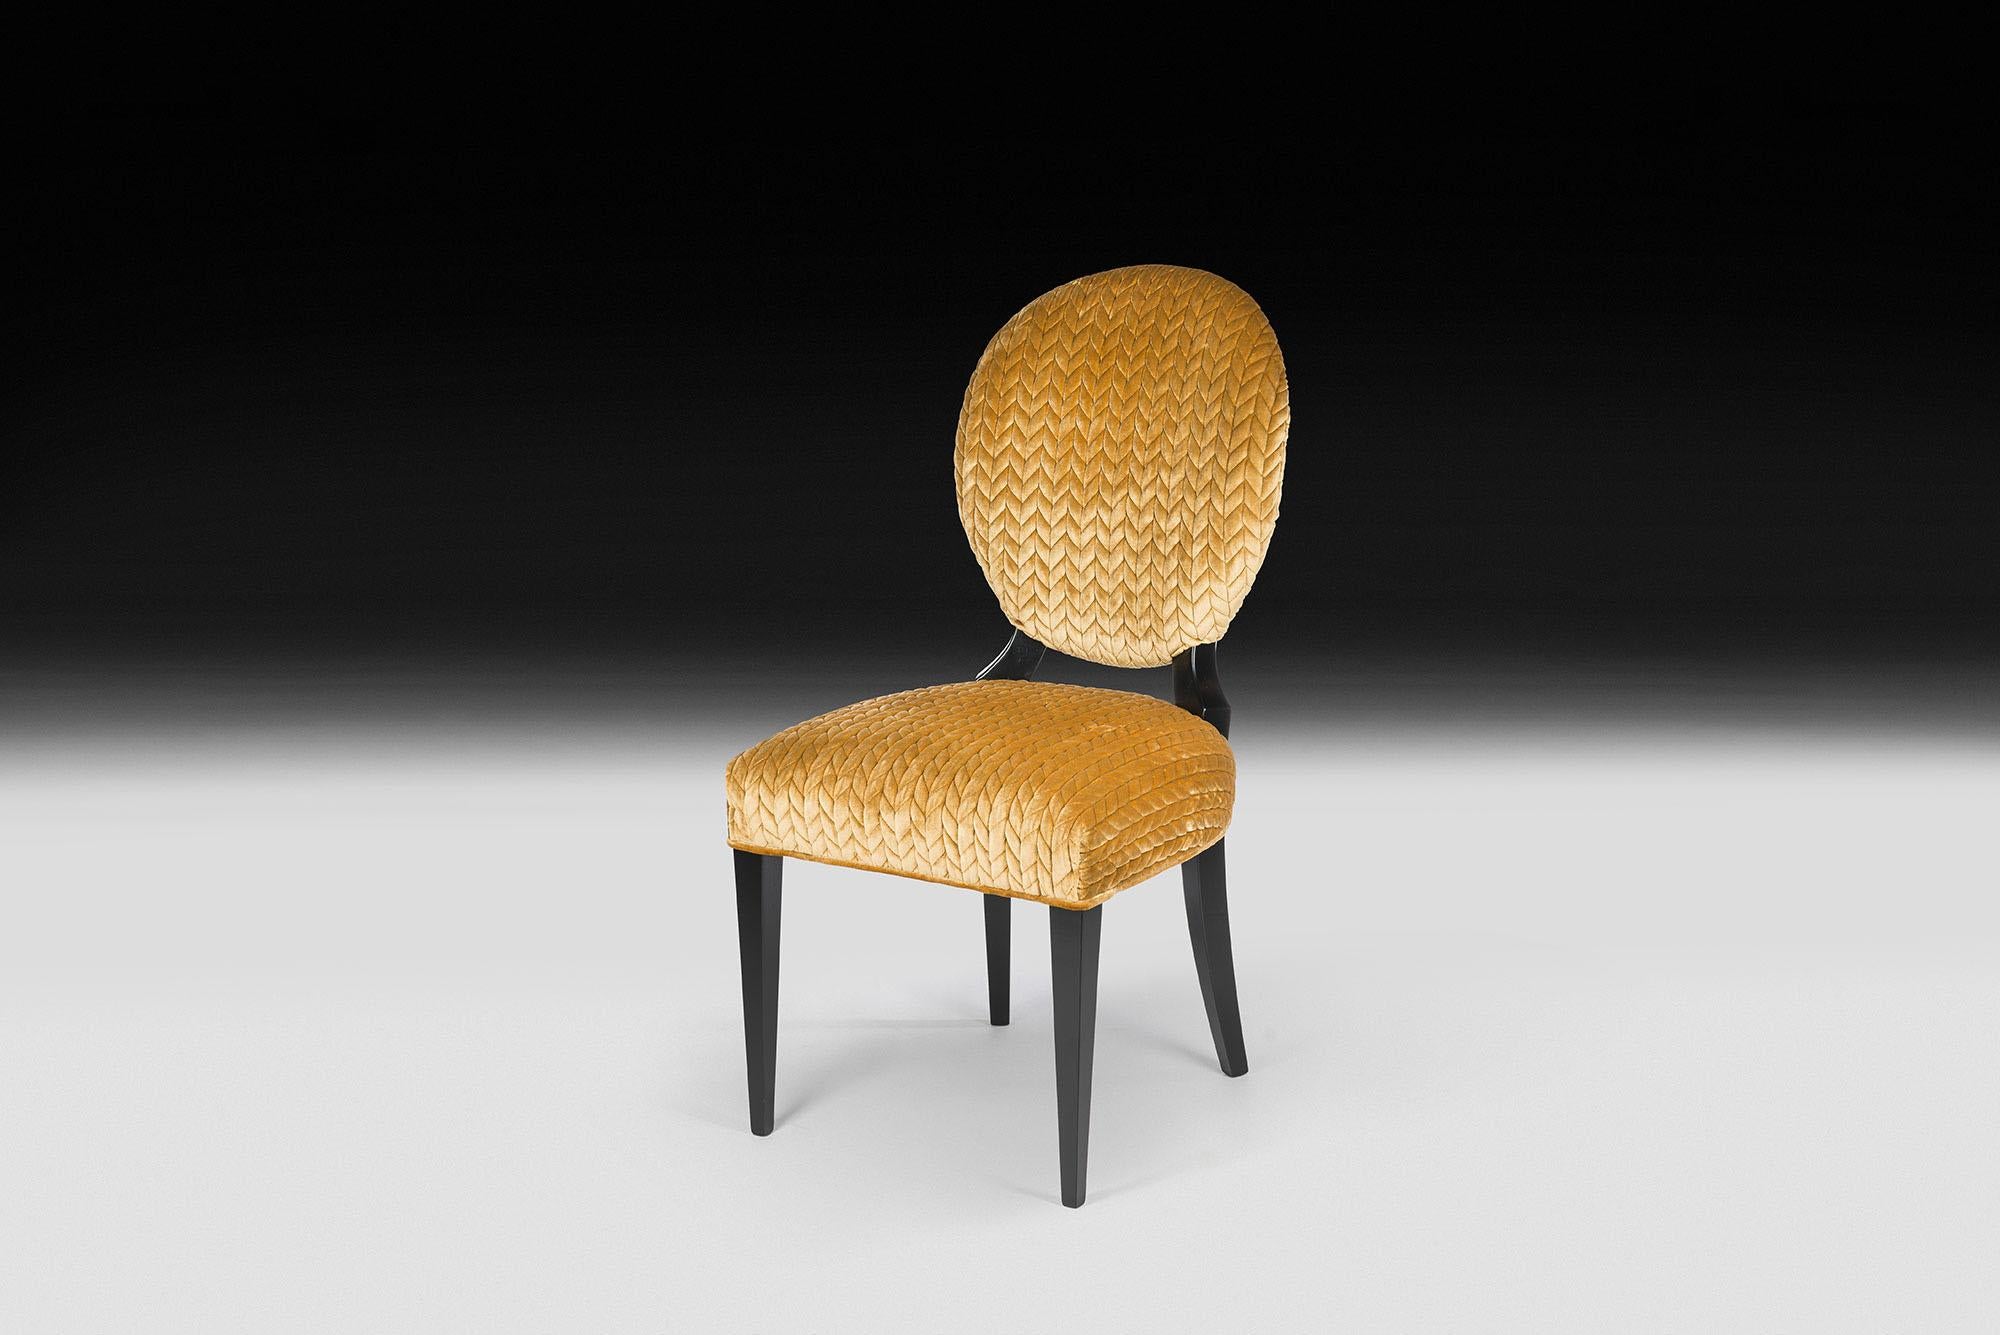 Les meubles VG représentent le luxe en termes d'exclusivité, de distinction et de haute qualité. Ils sont le résultat d'un design sophistiqué et exclusif à l'identité forte et sont le fruit d'une attention méticuleuse portée aux détails typiques des